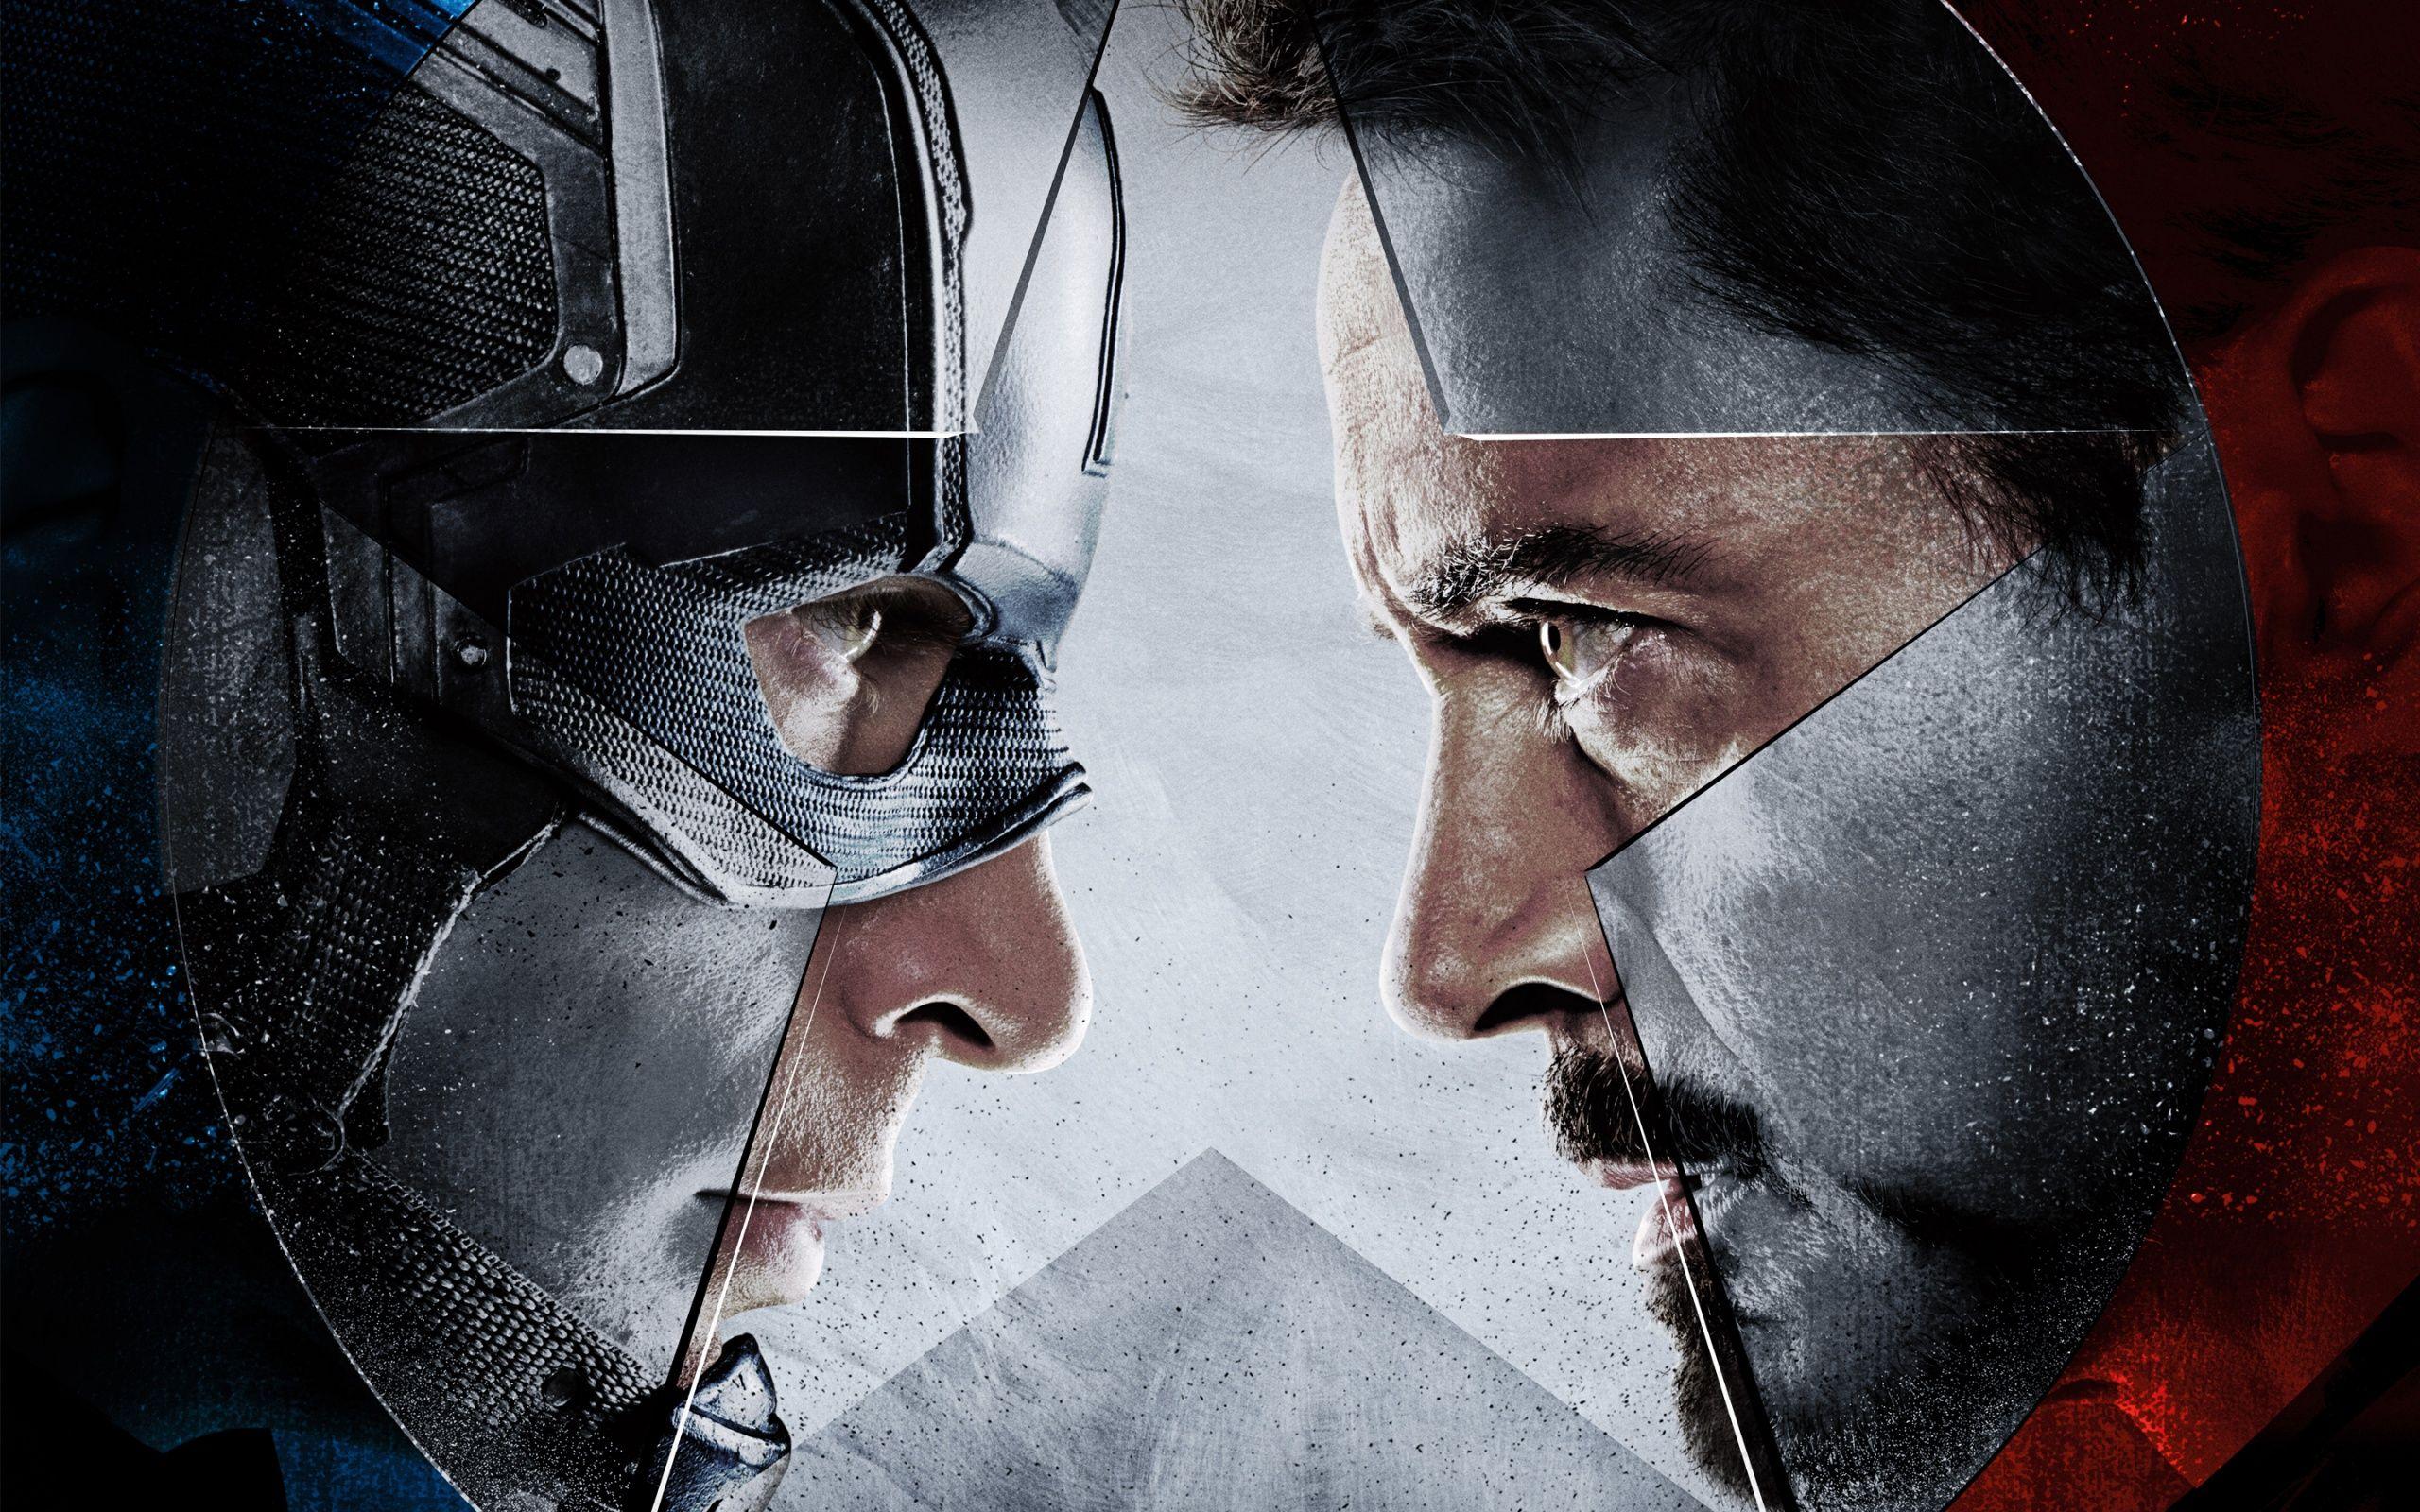 Captain America Vs Iron Man 2016 Wallpaper in jpg format for free